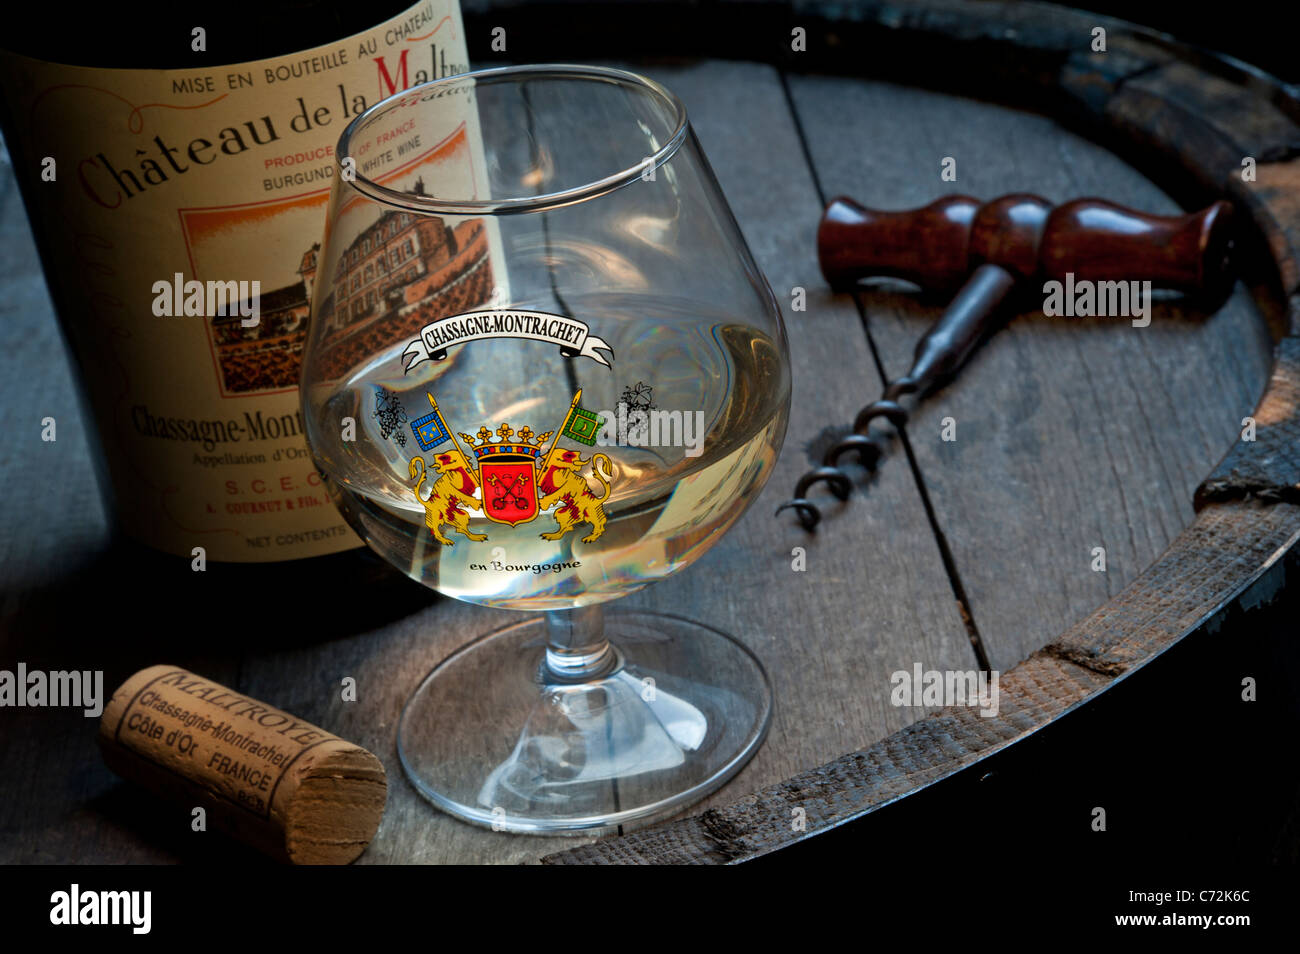 Chateau de la Maltroye degustazione vino situazione in cantina con tappo di vetro e una bottiglia di Chassagne-Montrachet fina e bianca di vino di Borgogna Cote d'Or Francia Foto Stock